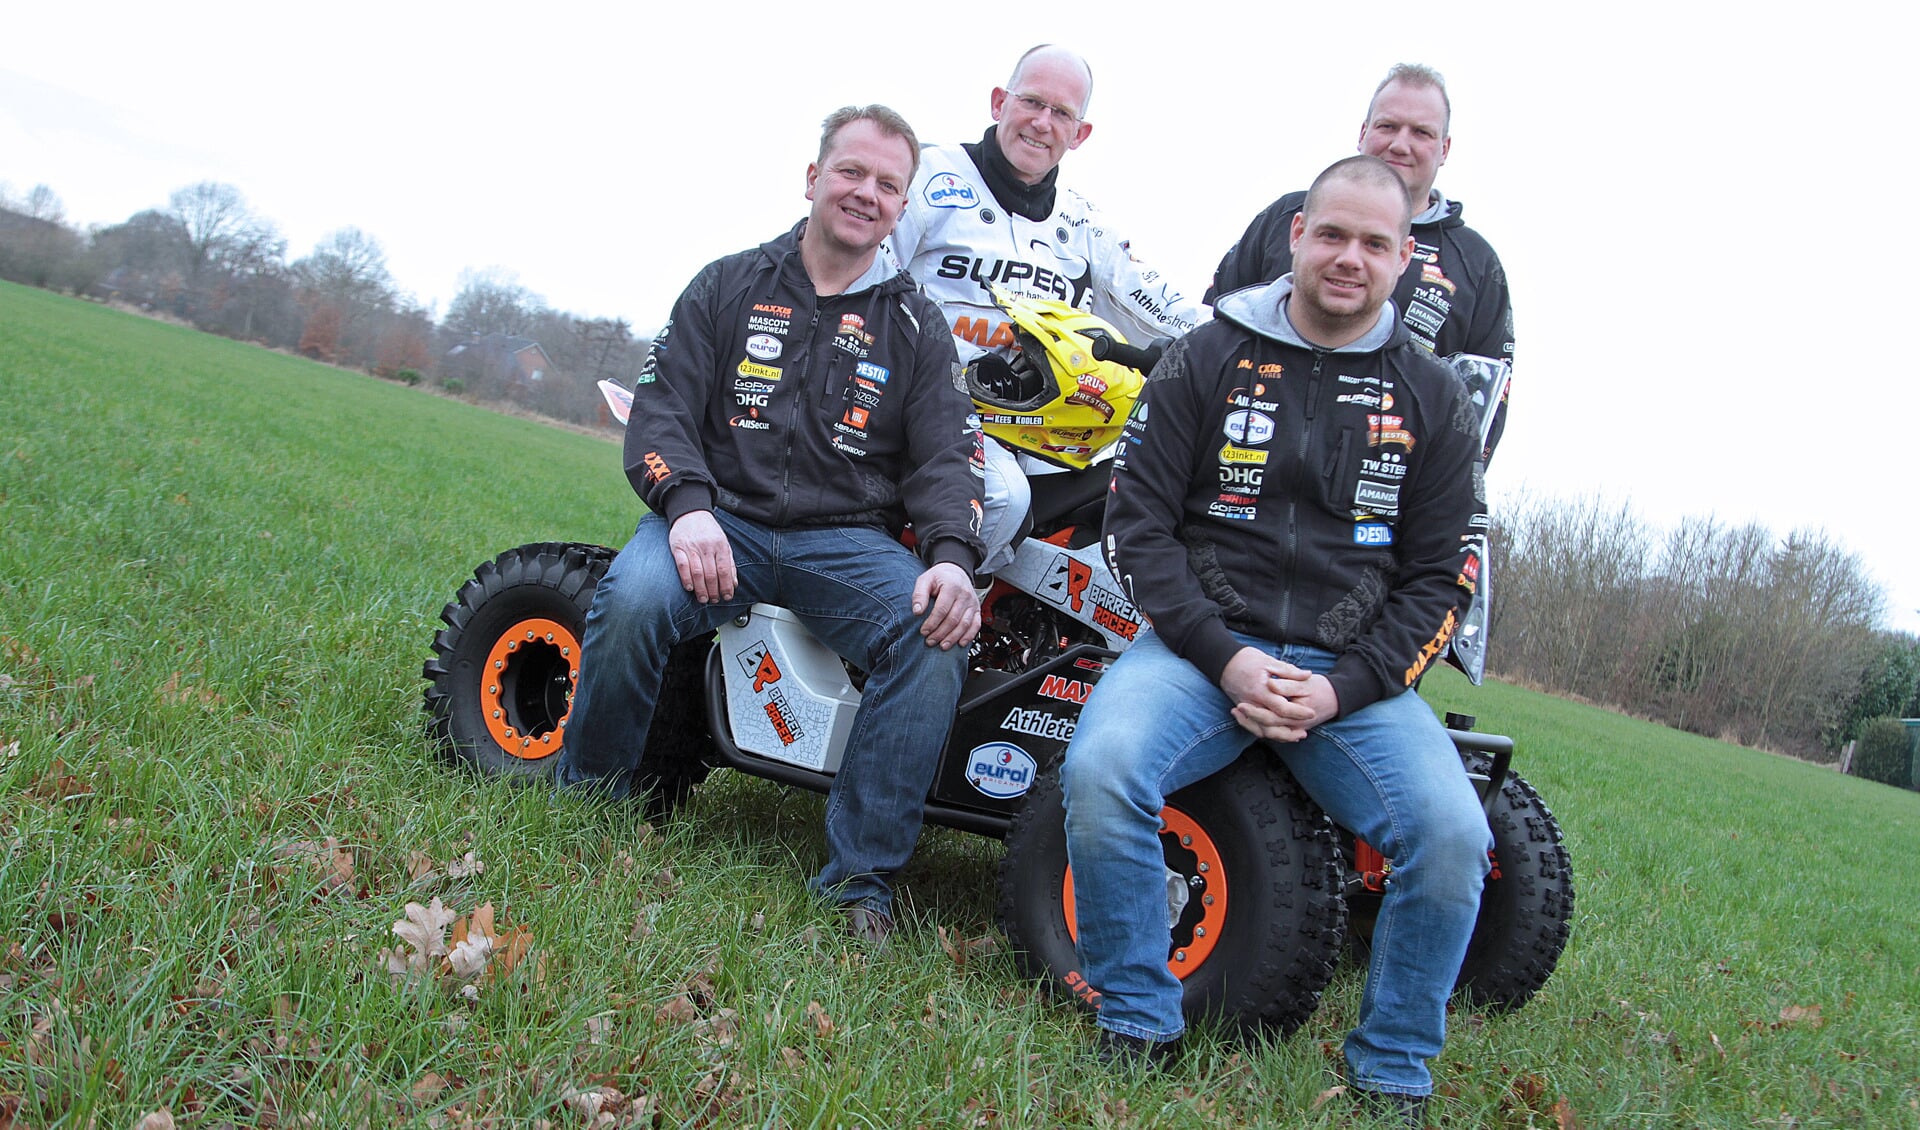 Team Barren Racing uit Vorden met Koolen, Wentink, Vruggink en Ten Harkel. Foto: Henk Teerink